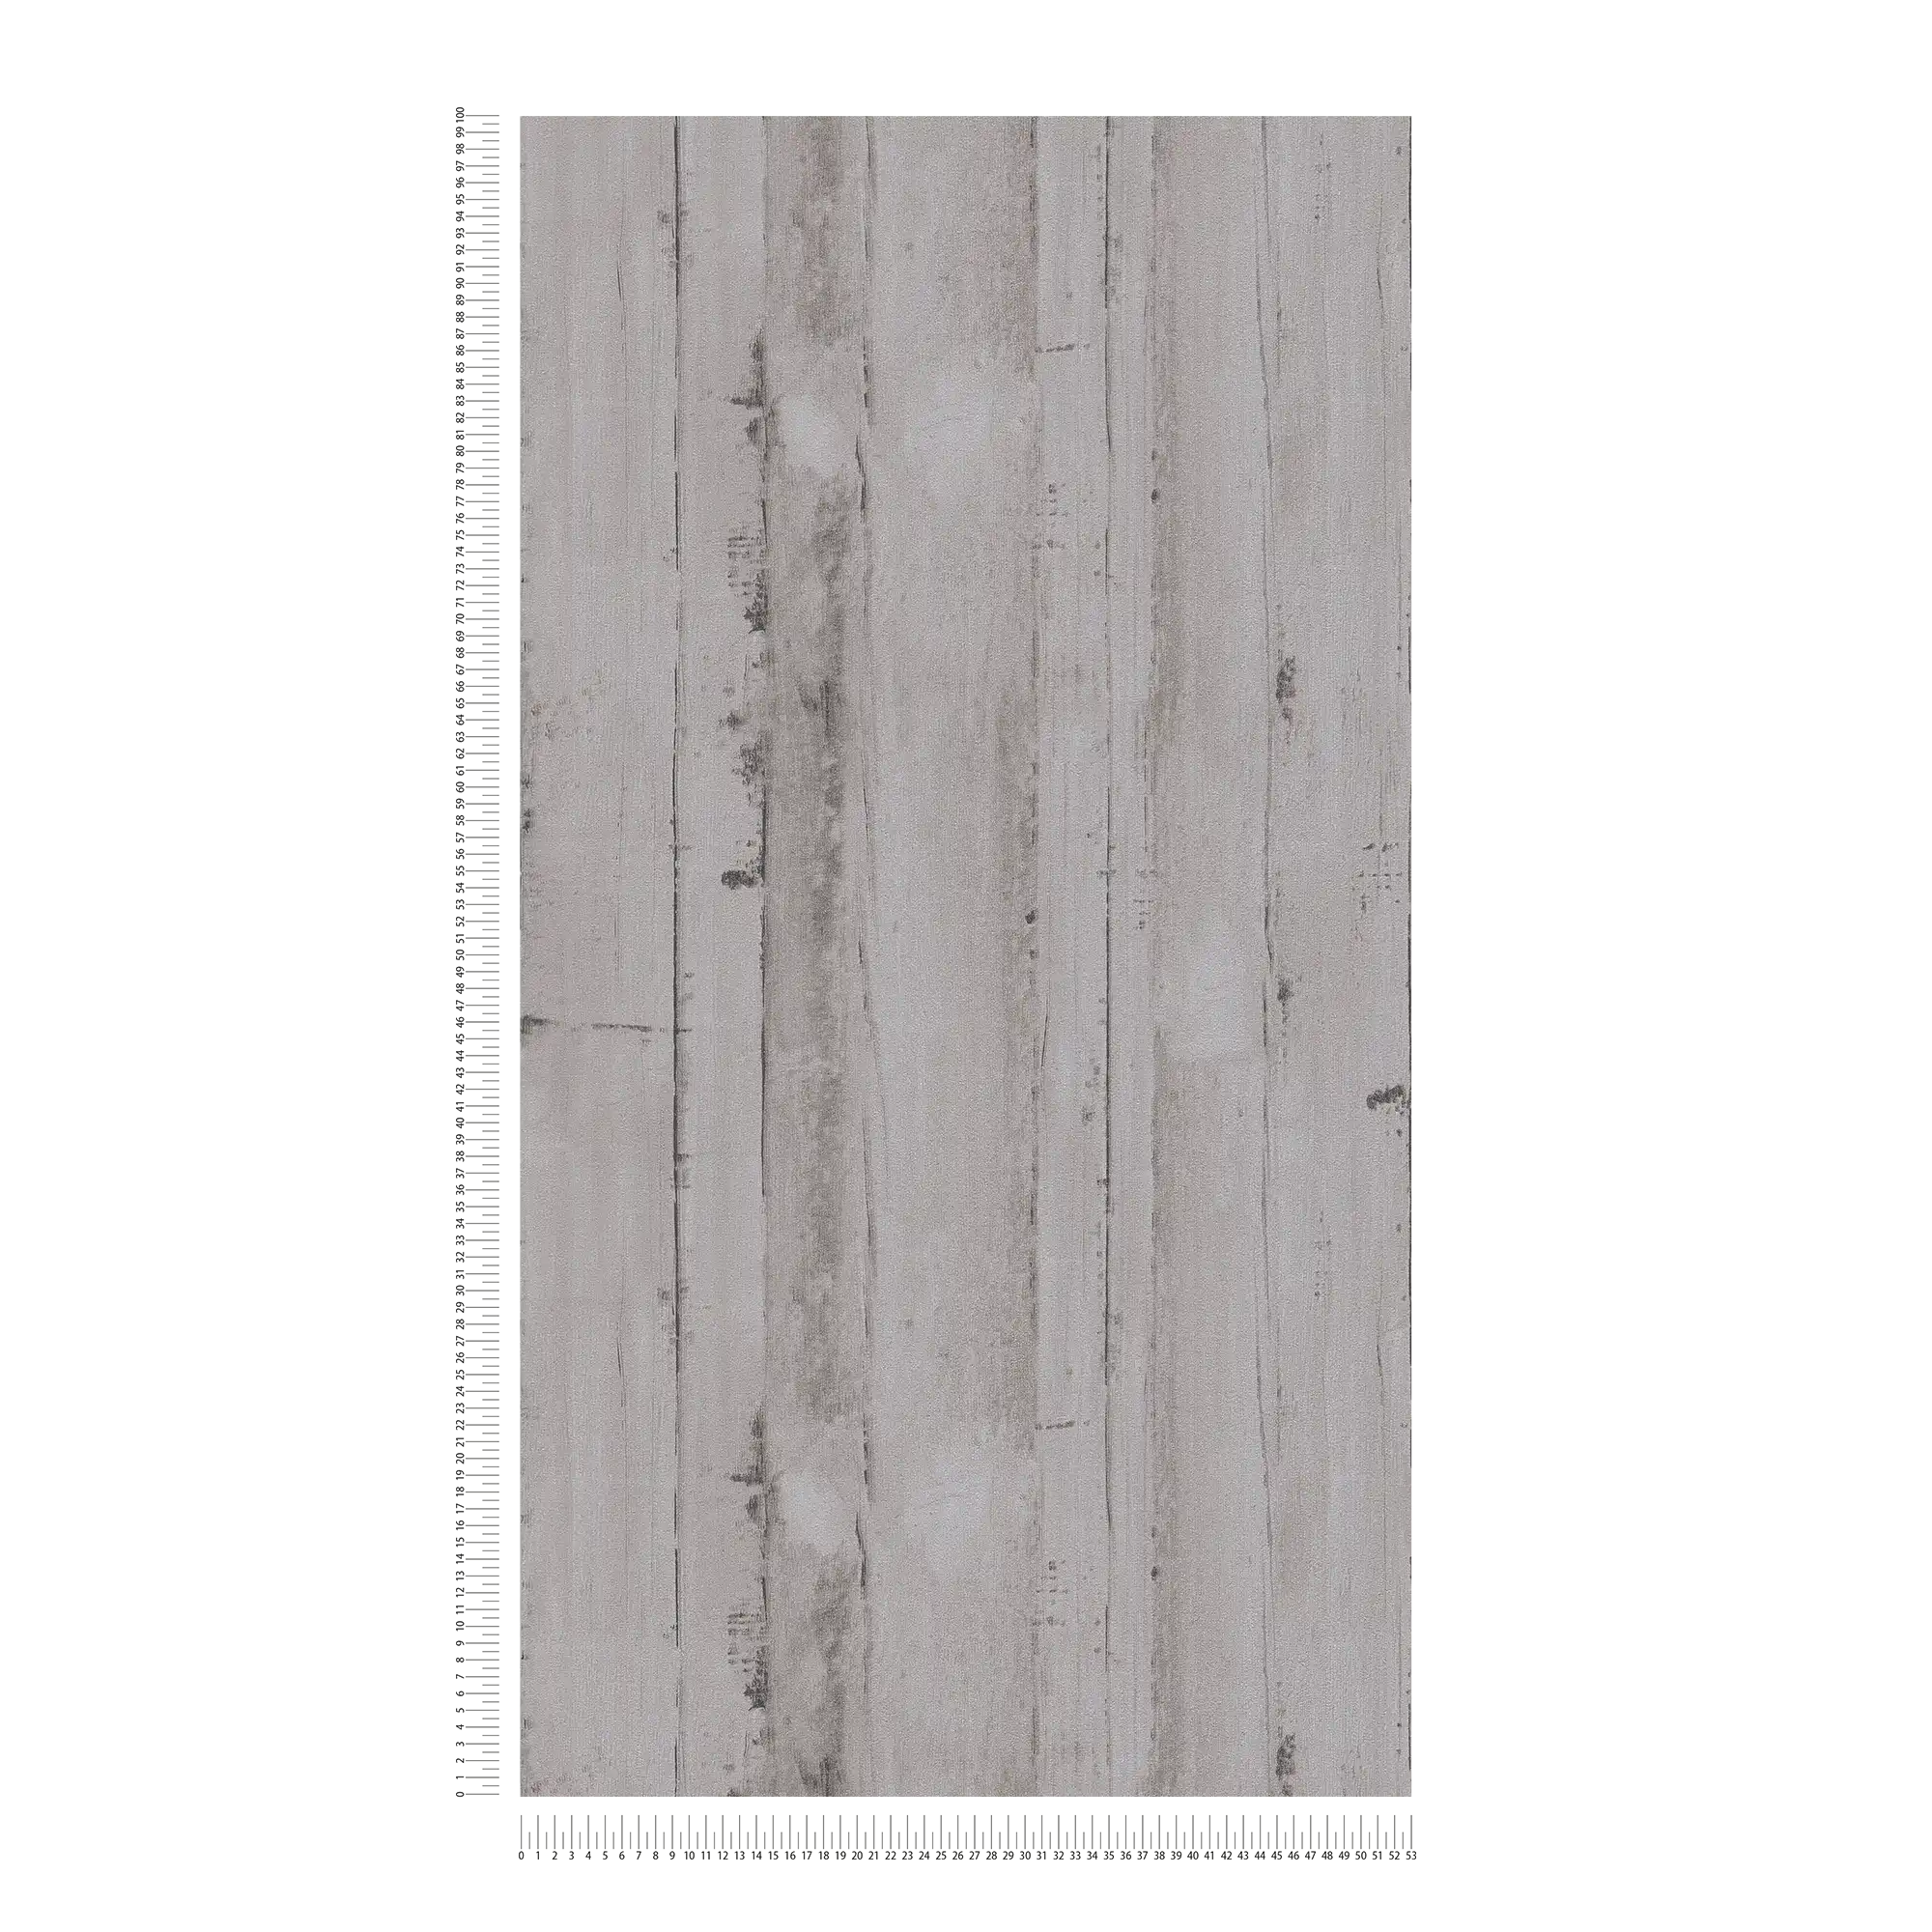             Vliesbehang met houtlook PVC-vrij - grijs
        